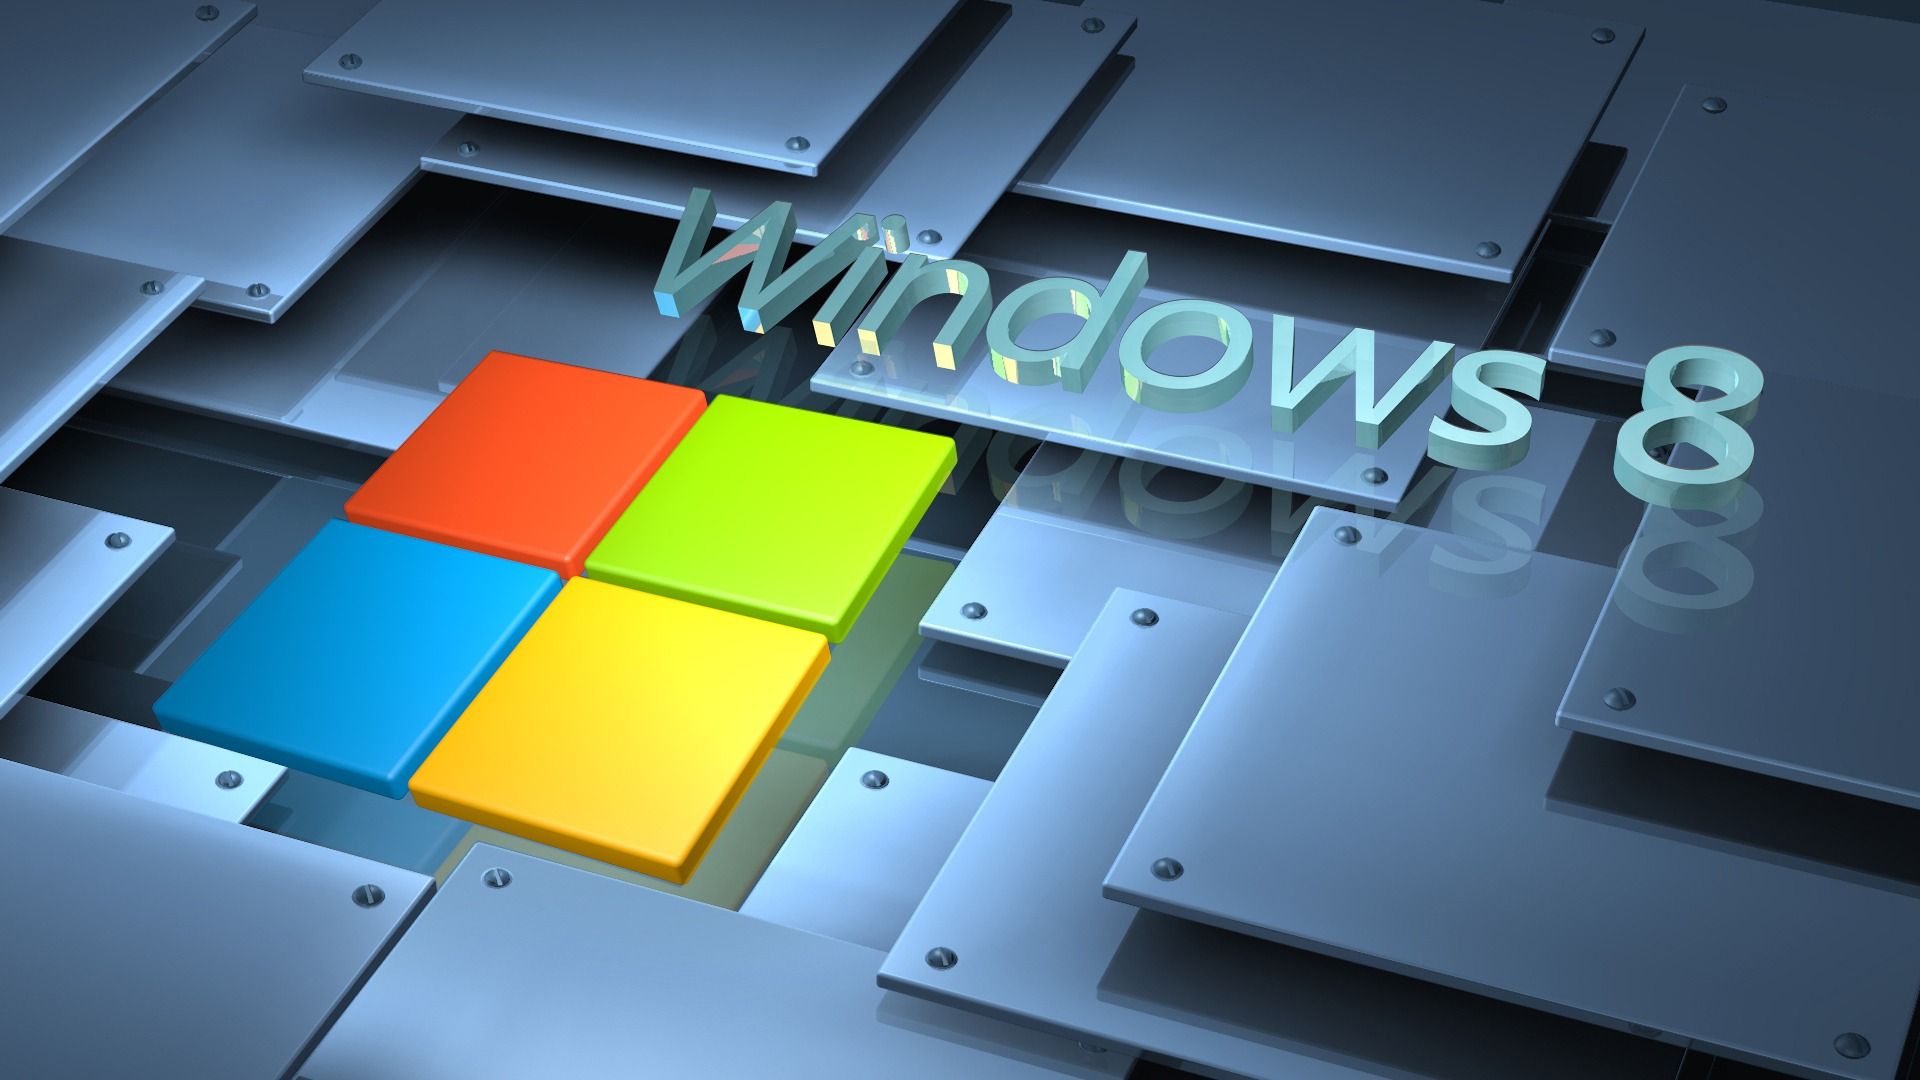 3D Windows 8 1920 x 1080 Wallpaper